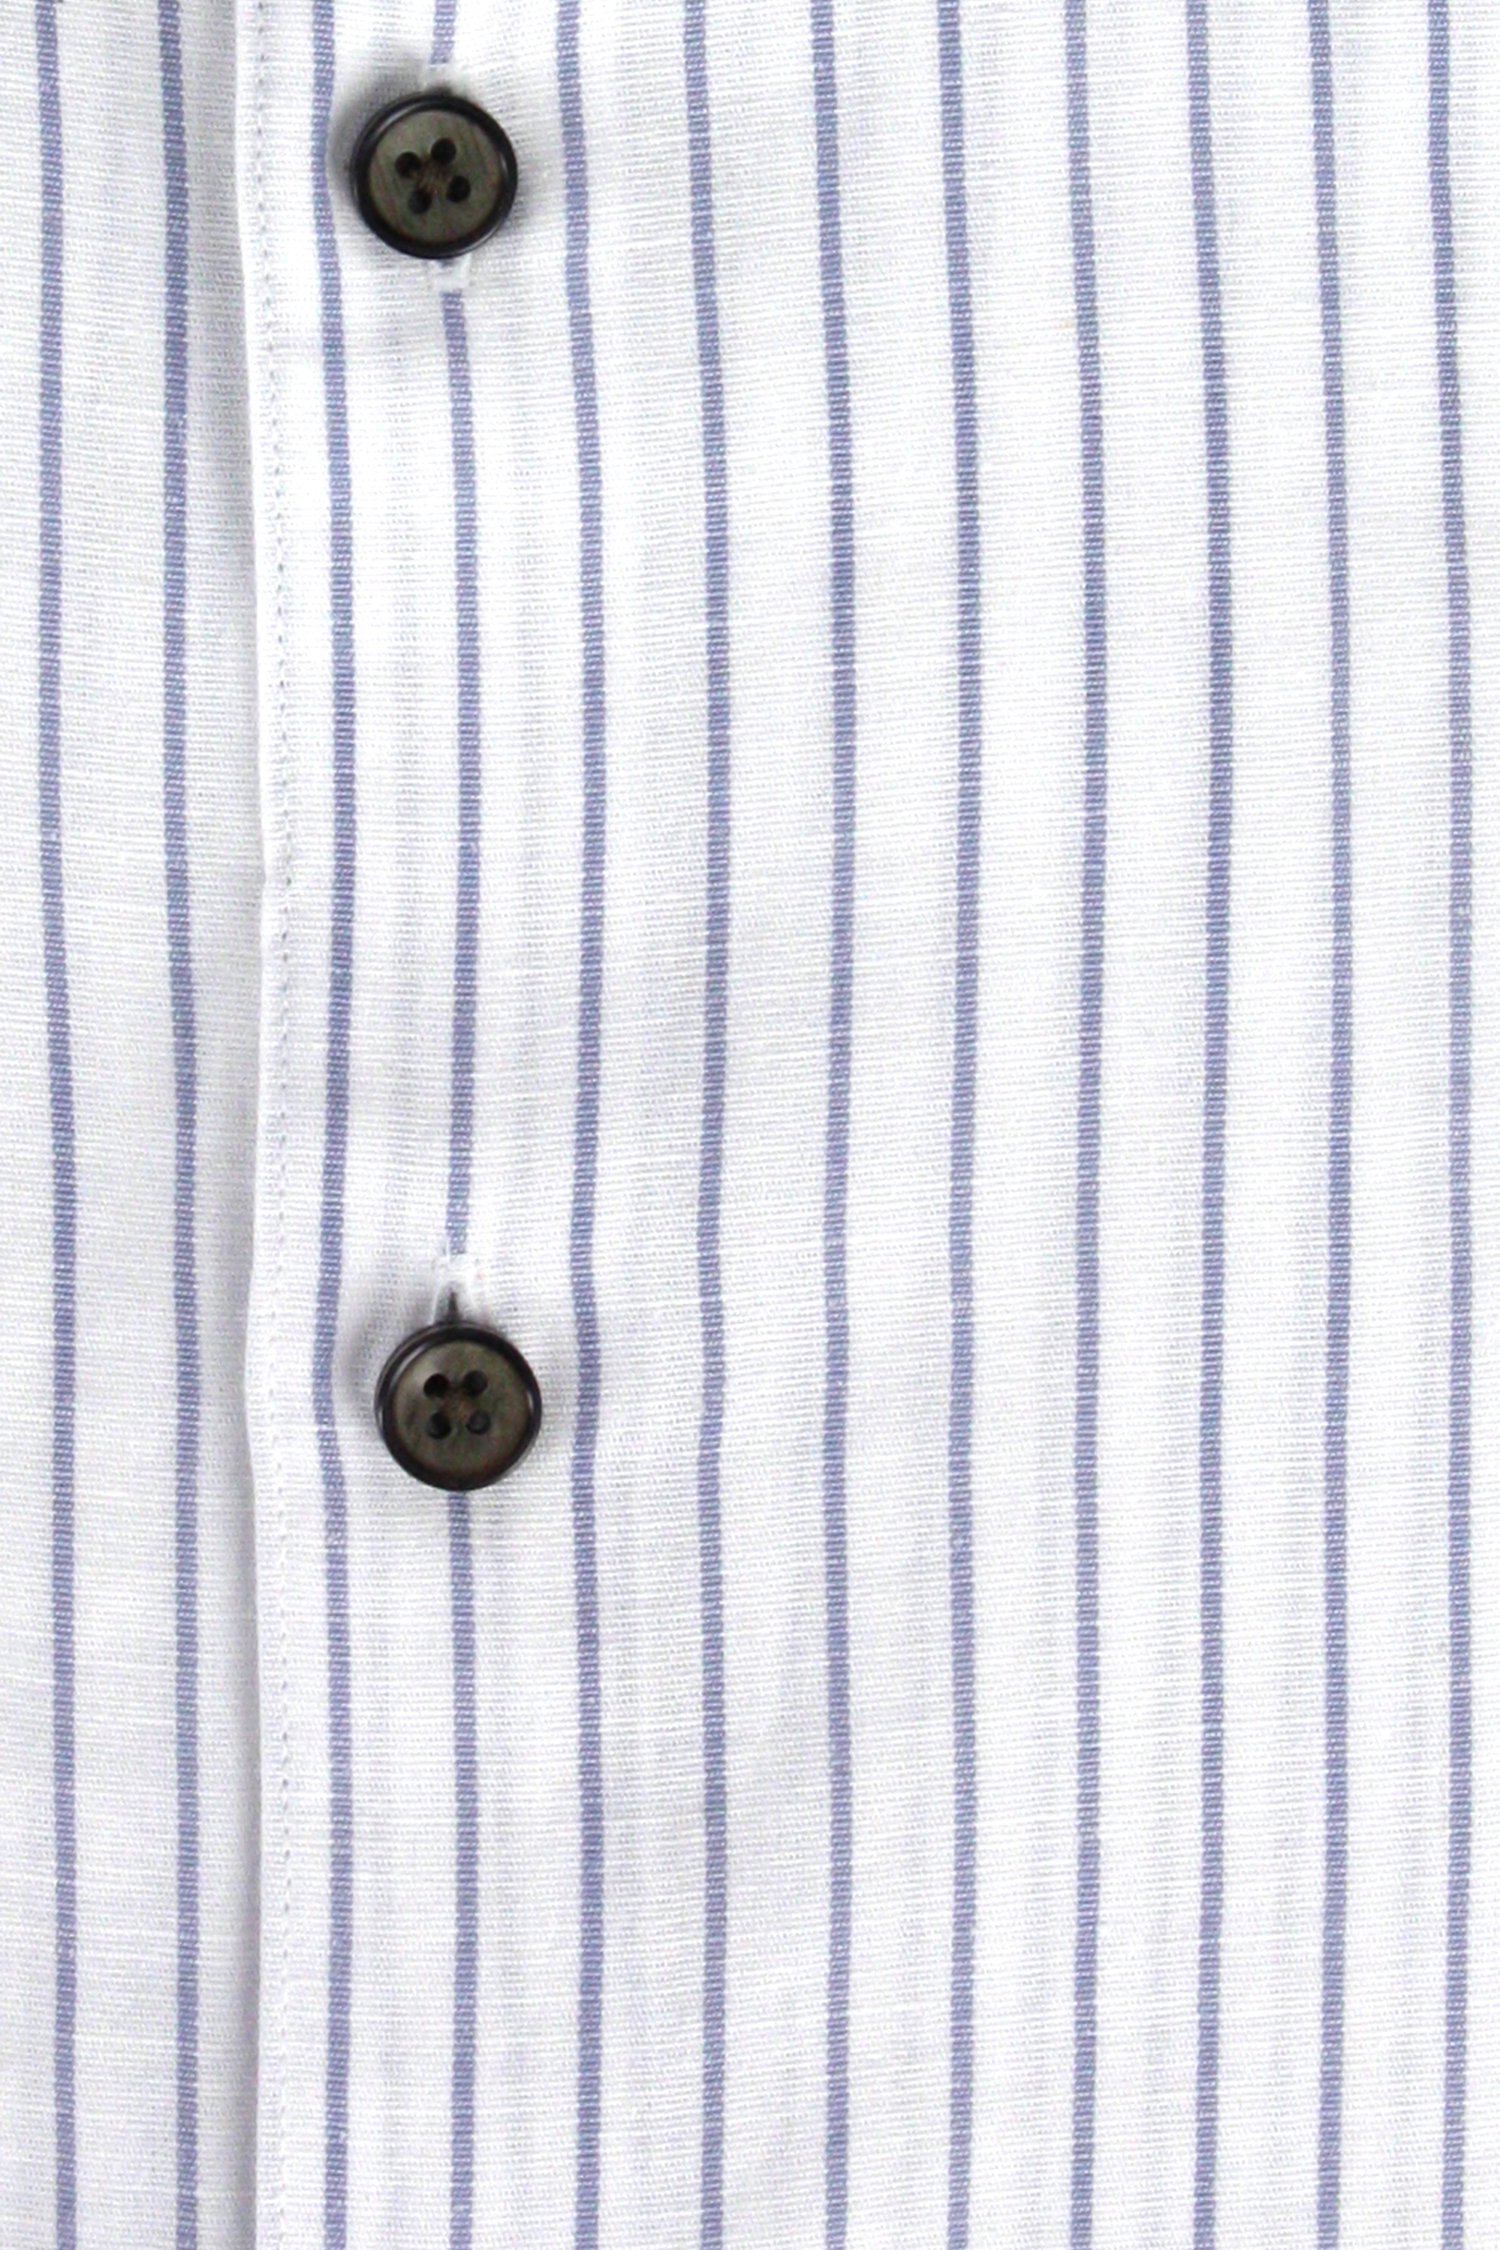 Wit-blauw gestreept hemd met linnen - slim fit van Upper East voor Heren